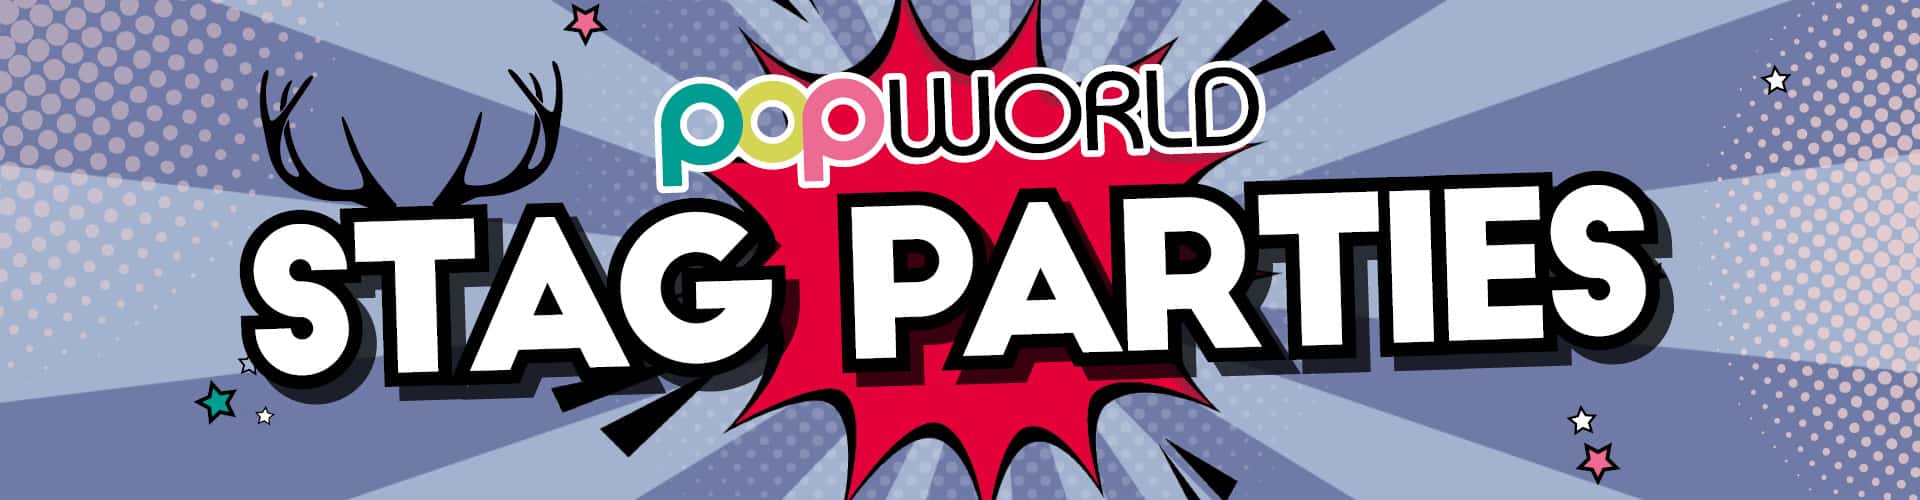 Stag Parties at Popworld Leeds